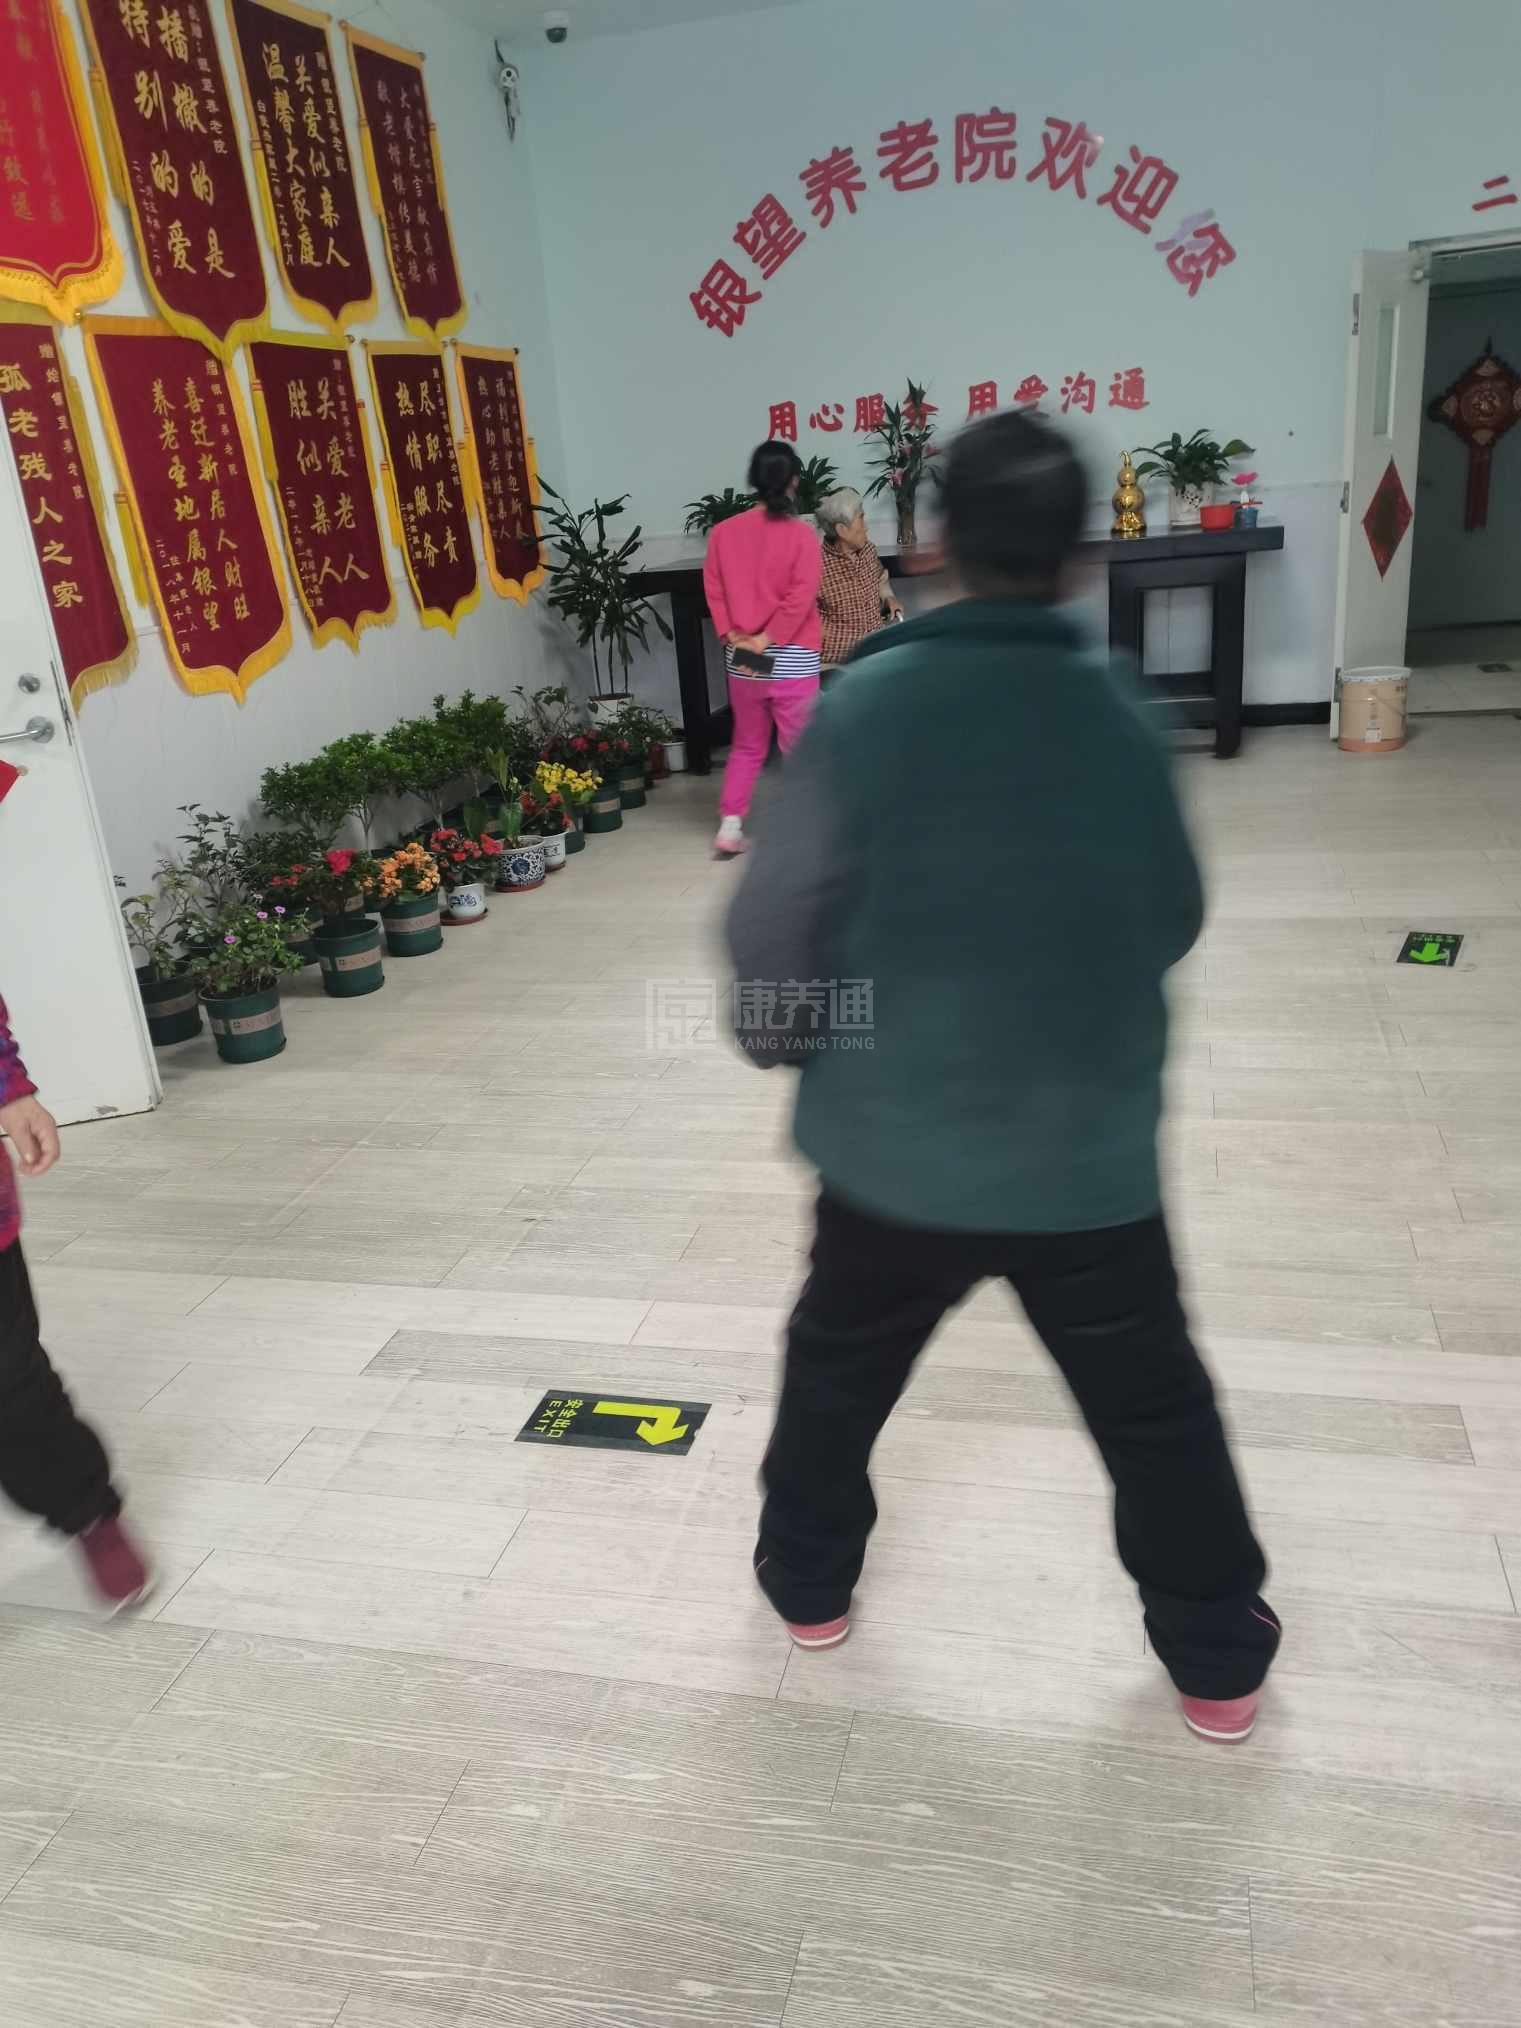 天津市红桥区银望养老院服务项目图6让长者体面而尊严地生活